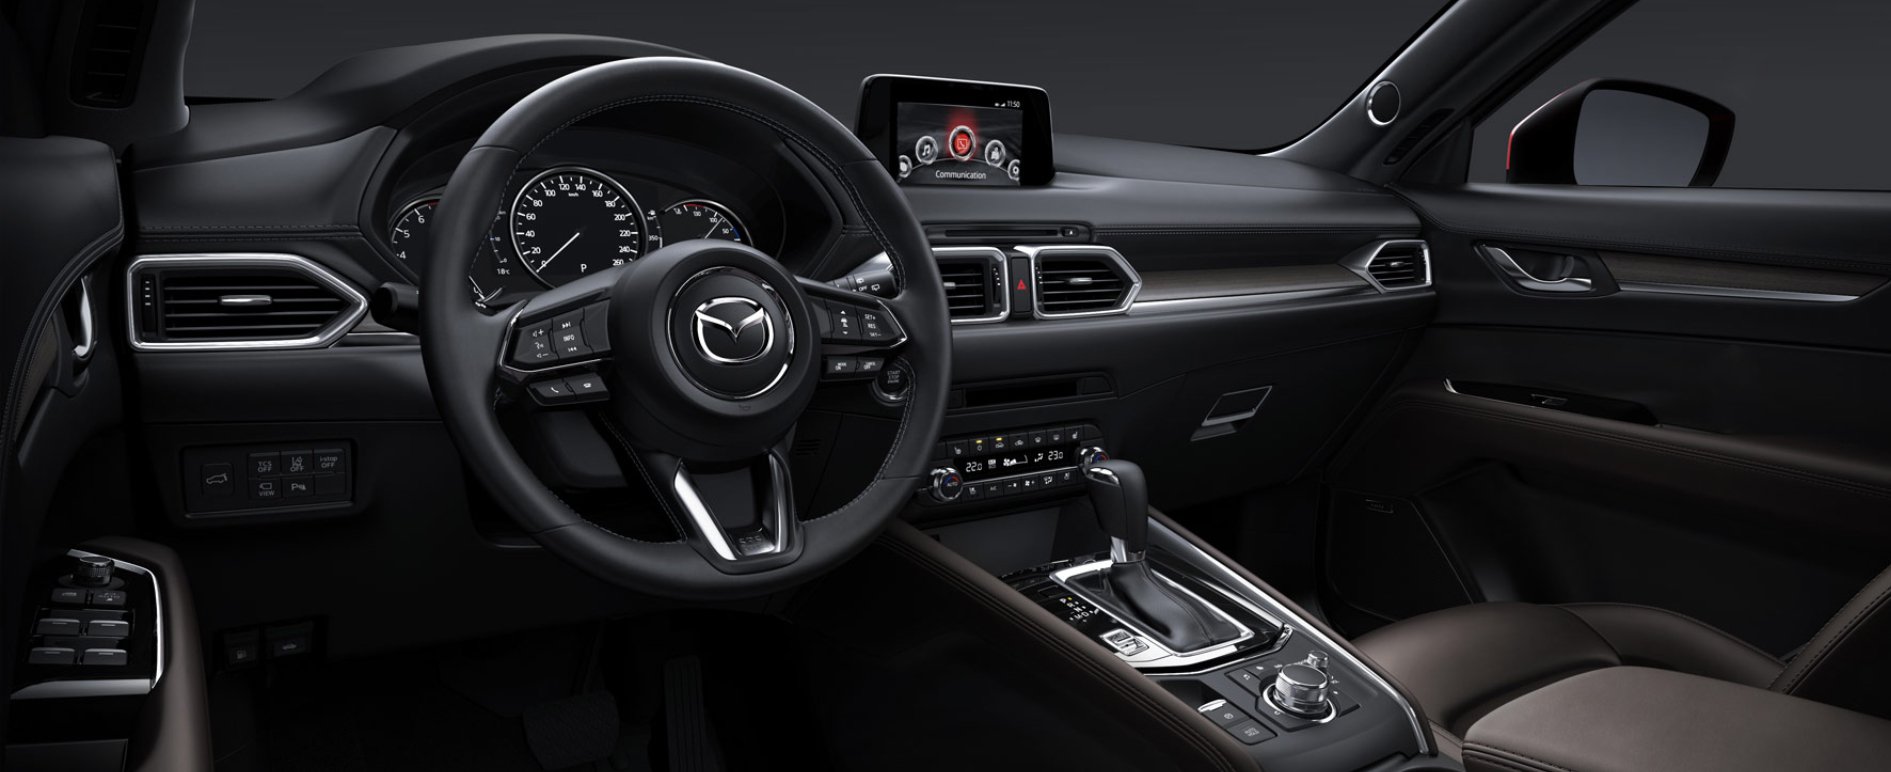 Mazda CX5 interni